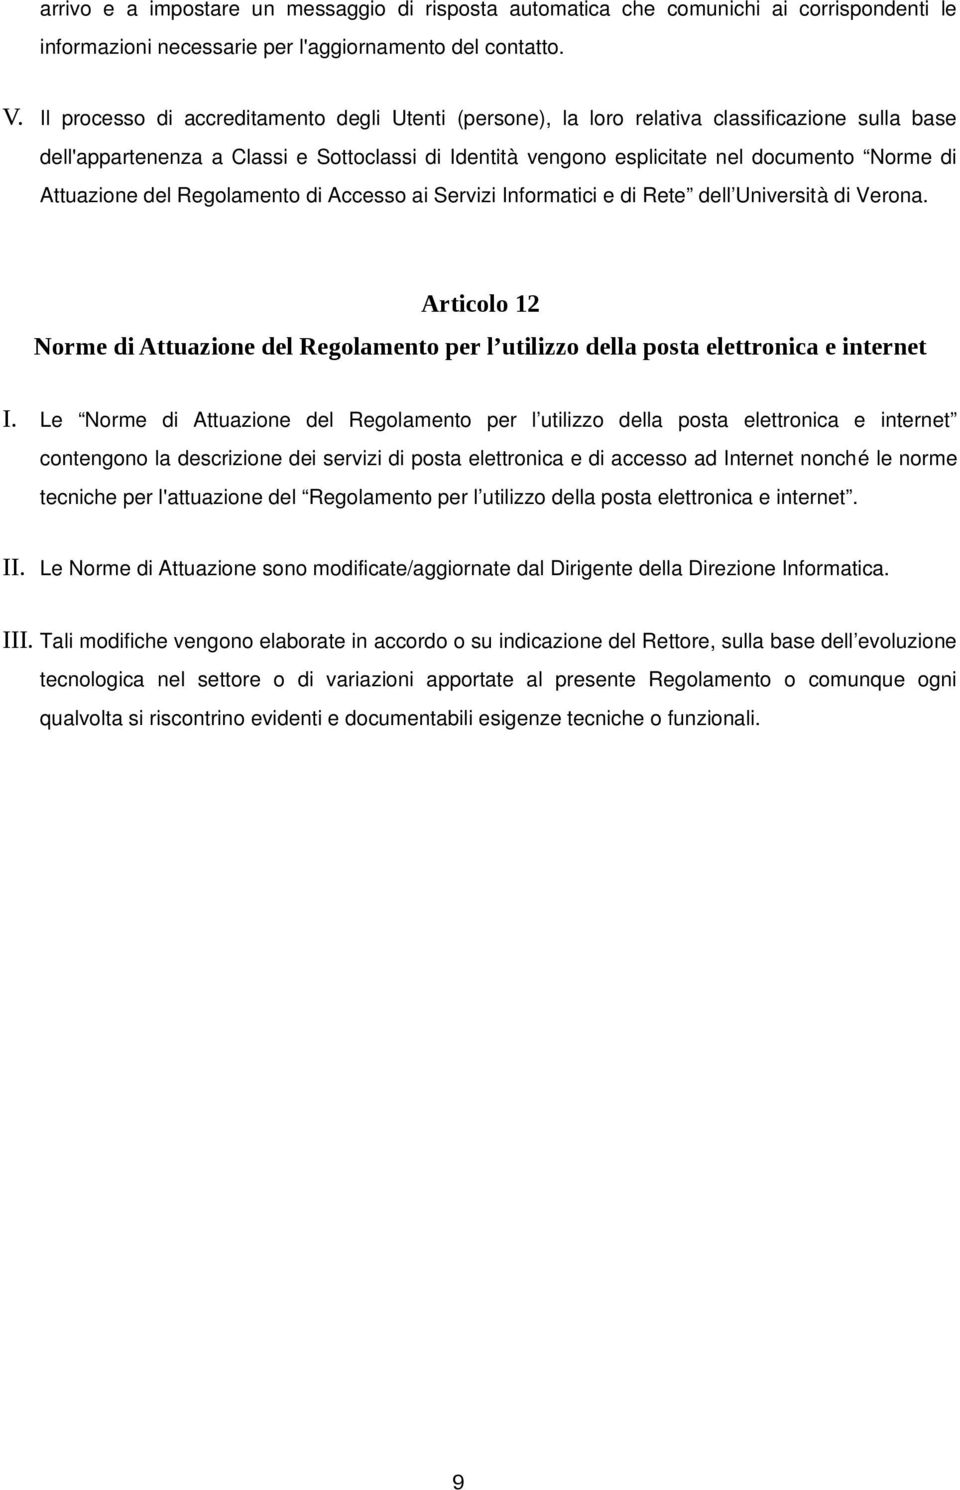 Attuazione del Regolamento di Accesso ai Servizi Informatici e di Rete dell Università di Verona. Articolo 12 Norme di Attuazione del Regolamento per l utilizzo della posta elettronica e internet I.